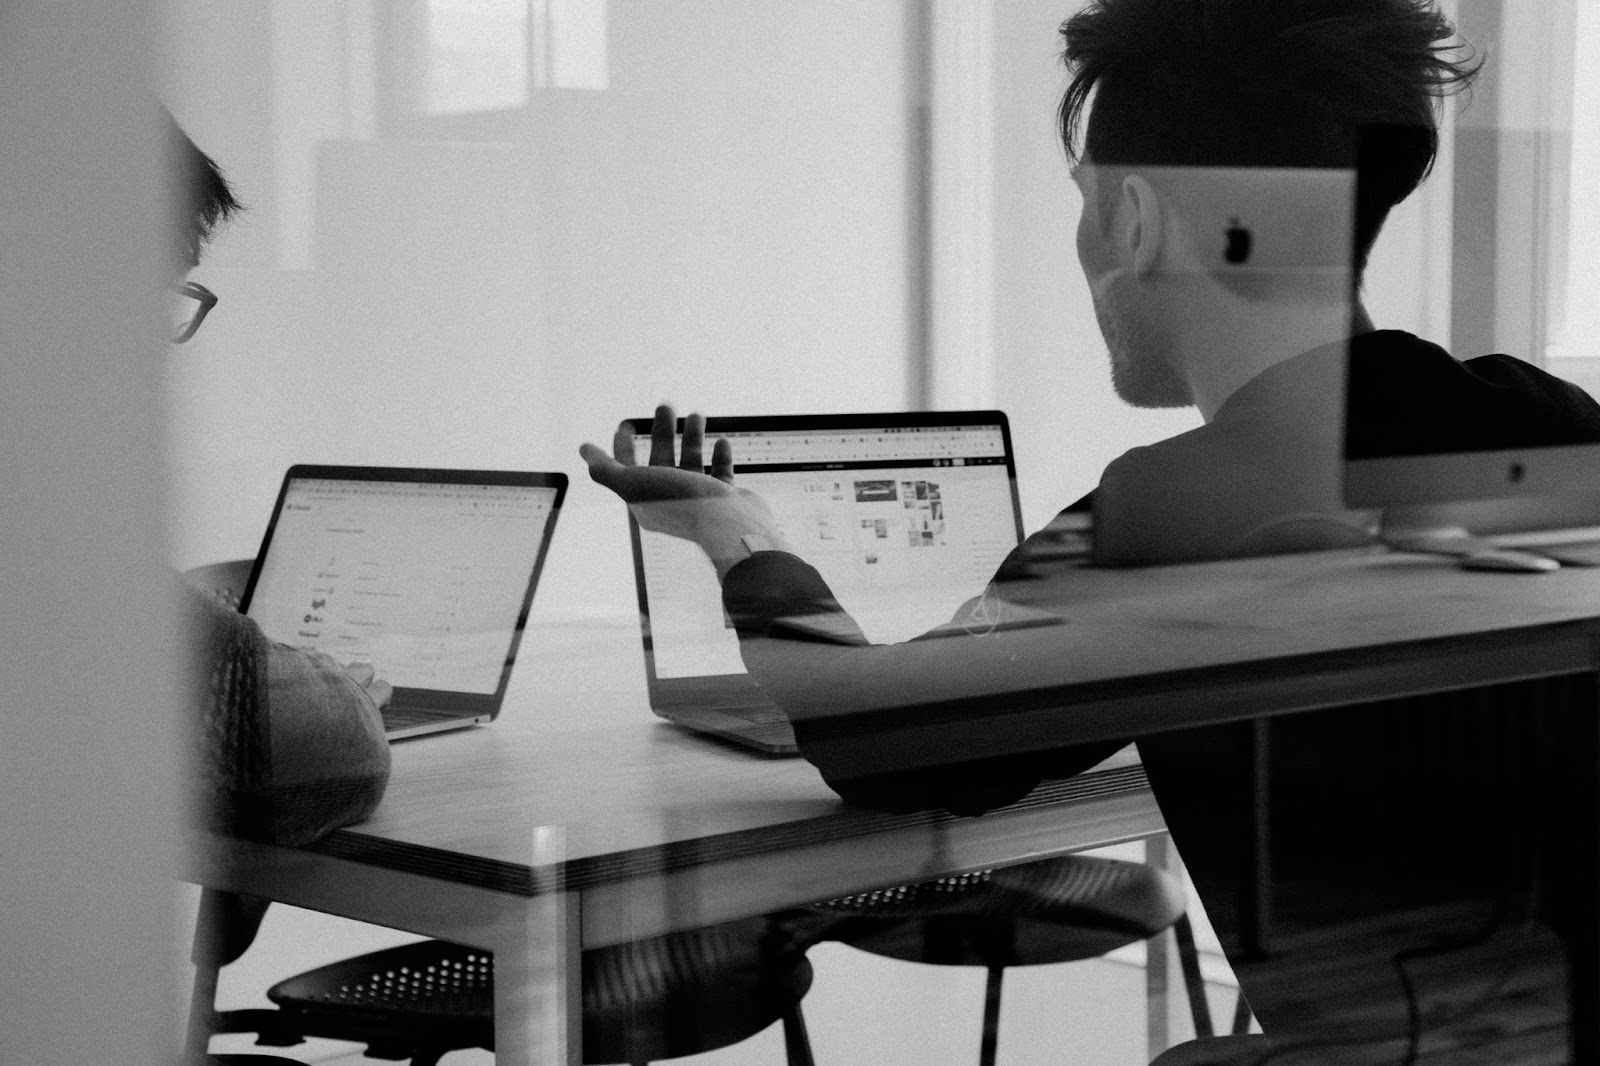 Pessoa sentada em uma mesa, trabalhando com dois laptops. O ambiente parece ser interno, iluminado pela luz natural que entra por uma janela. A pessoa está concentrada nas telas, envolvida em seu trabalho